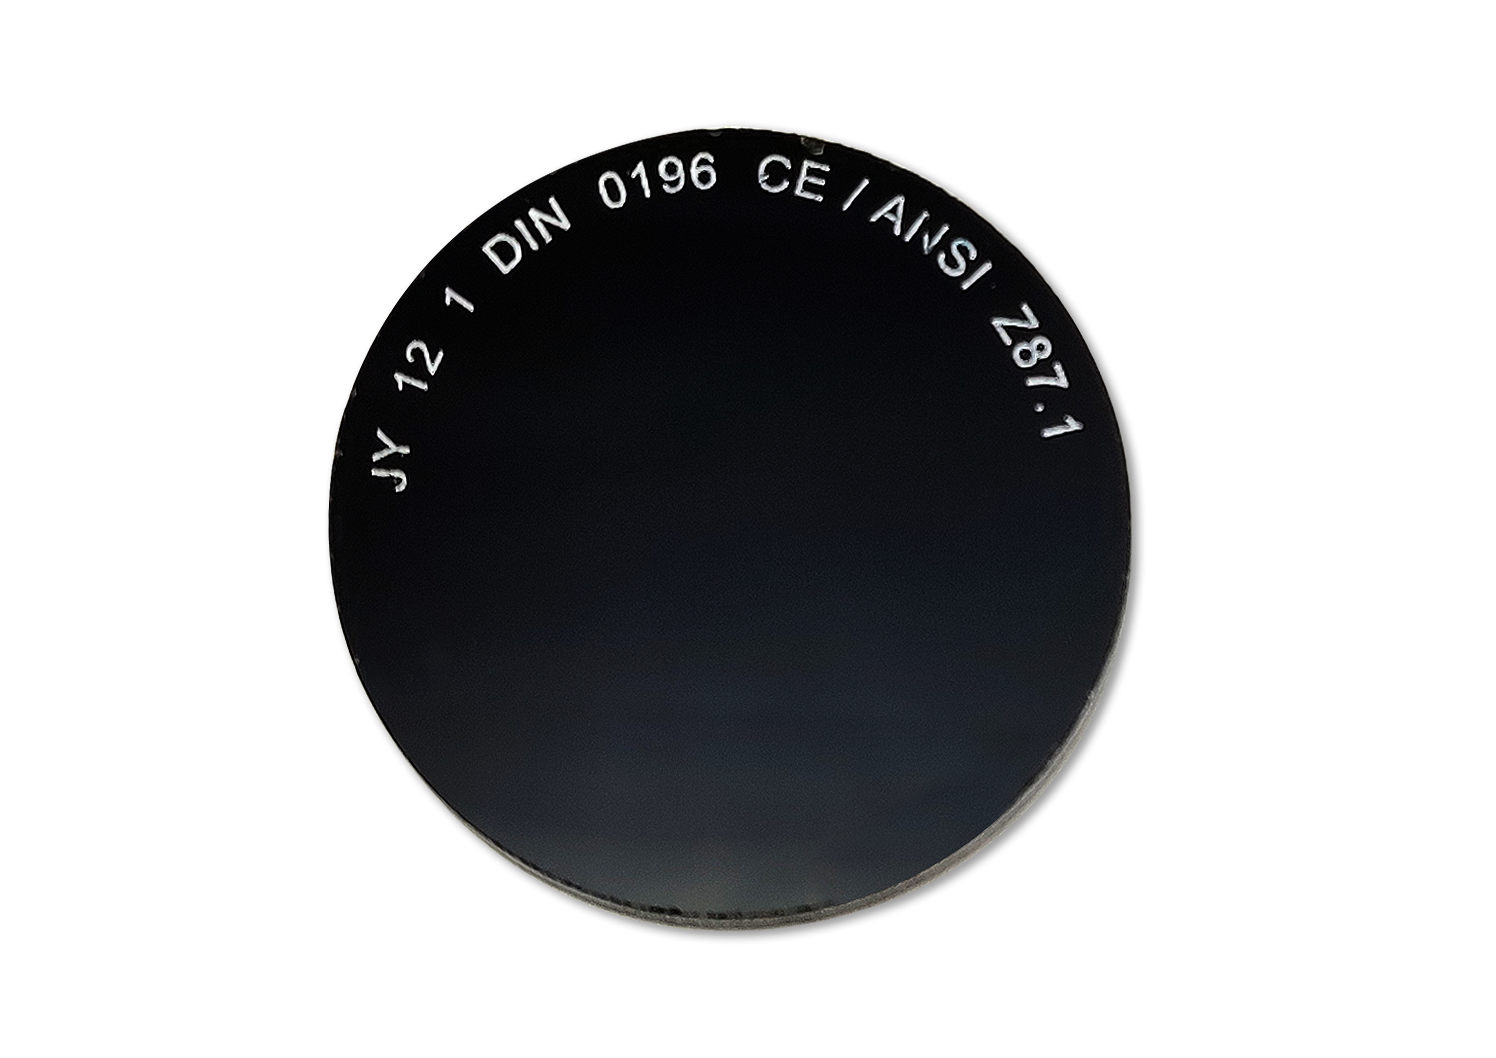 2188-LV1 Protection des Yeux Pièces de rechange pour tamis de soudage Lentille verte pour lunettes 2188-GIS. 50 mm.